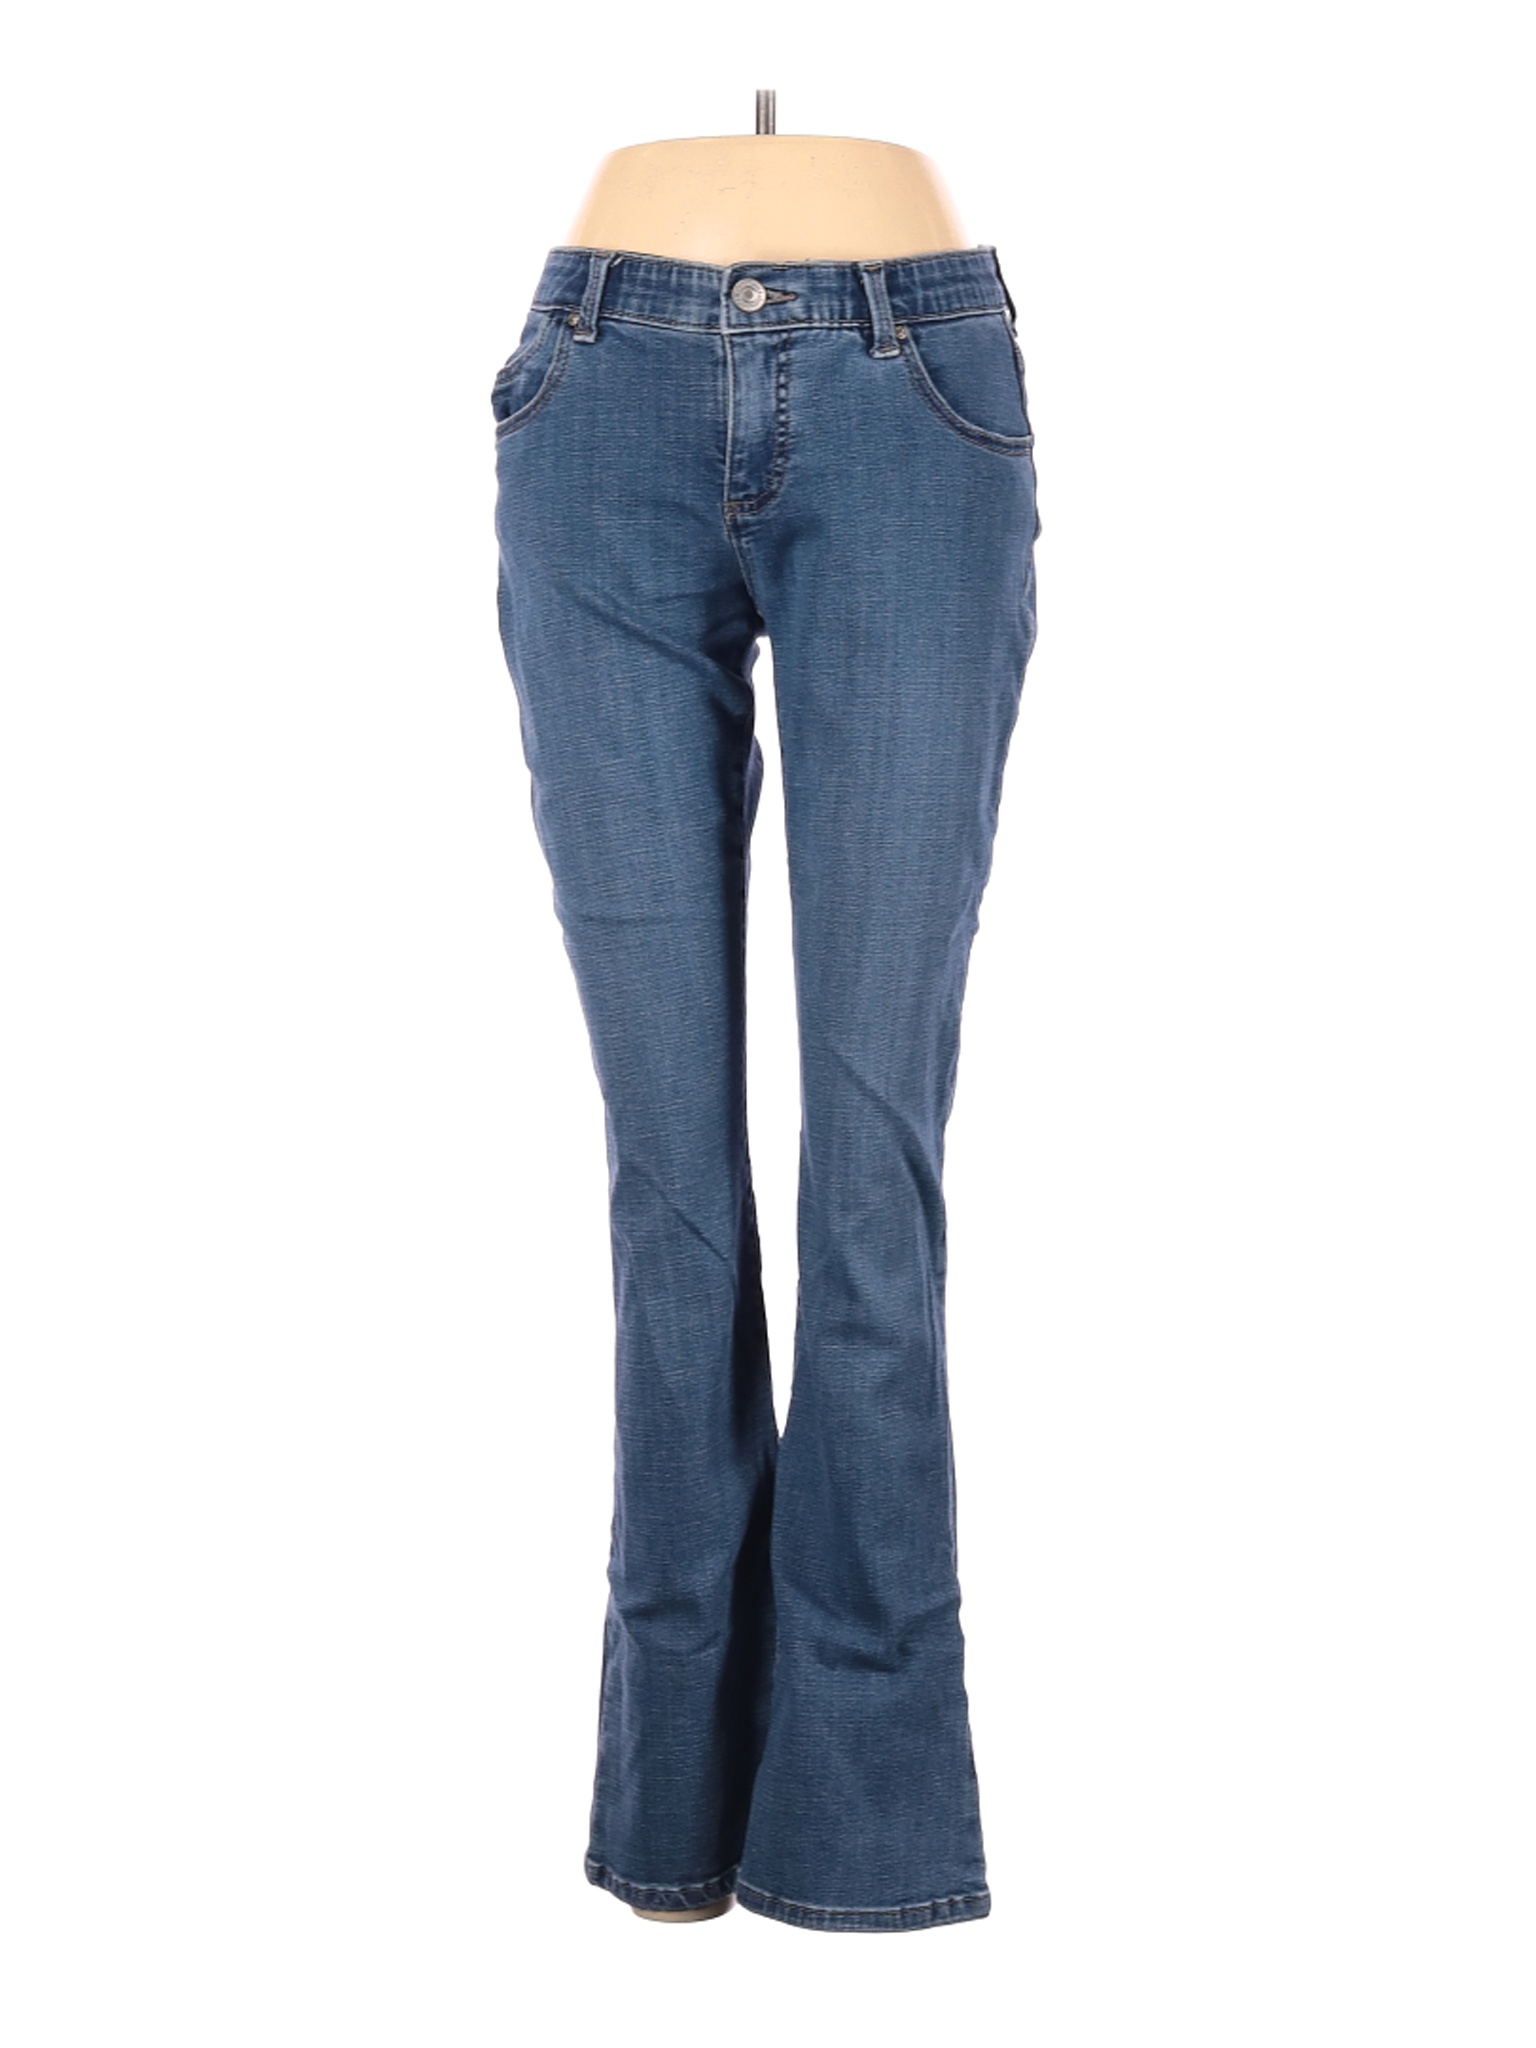 Lee Women Blue Jeans 2 Petites | eBay